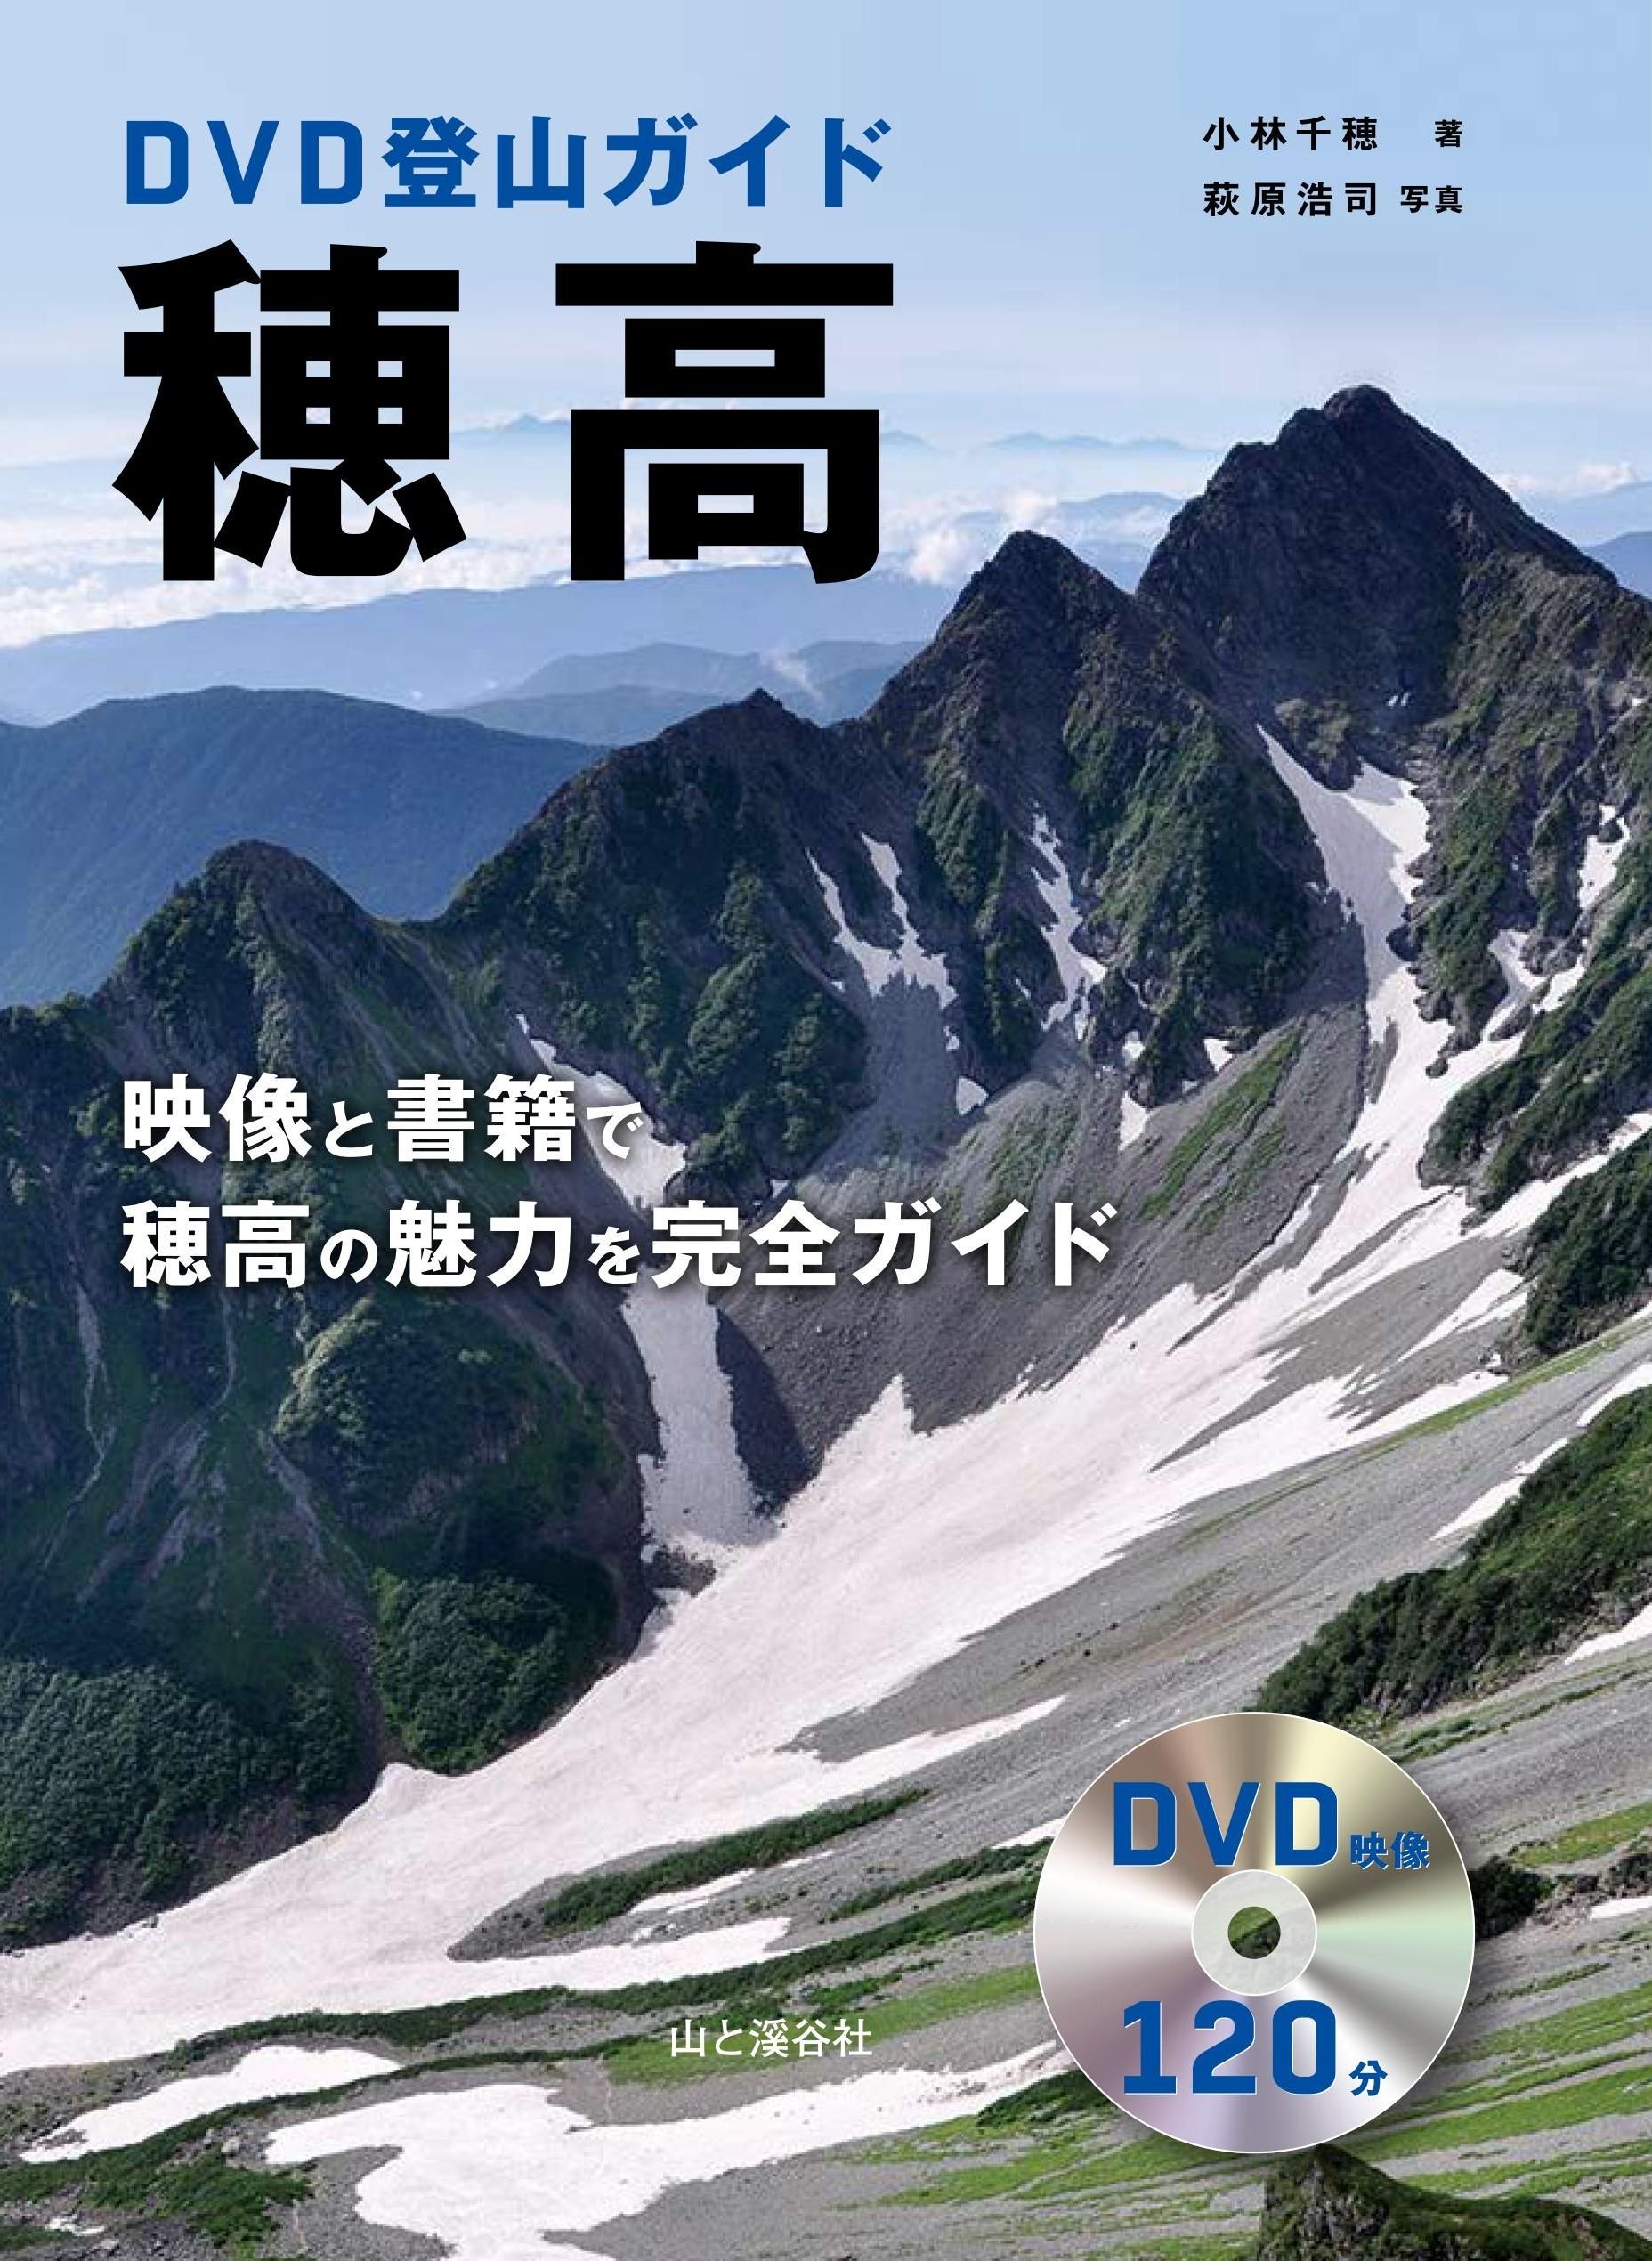 DVD登山ガイド 穂高 映像と書籍で穂高の魅力を完全ガイド DVD120分 (DVDブック)(中古品)